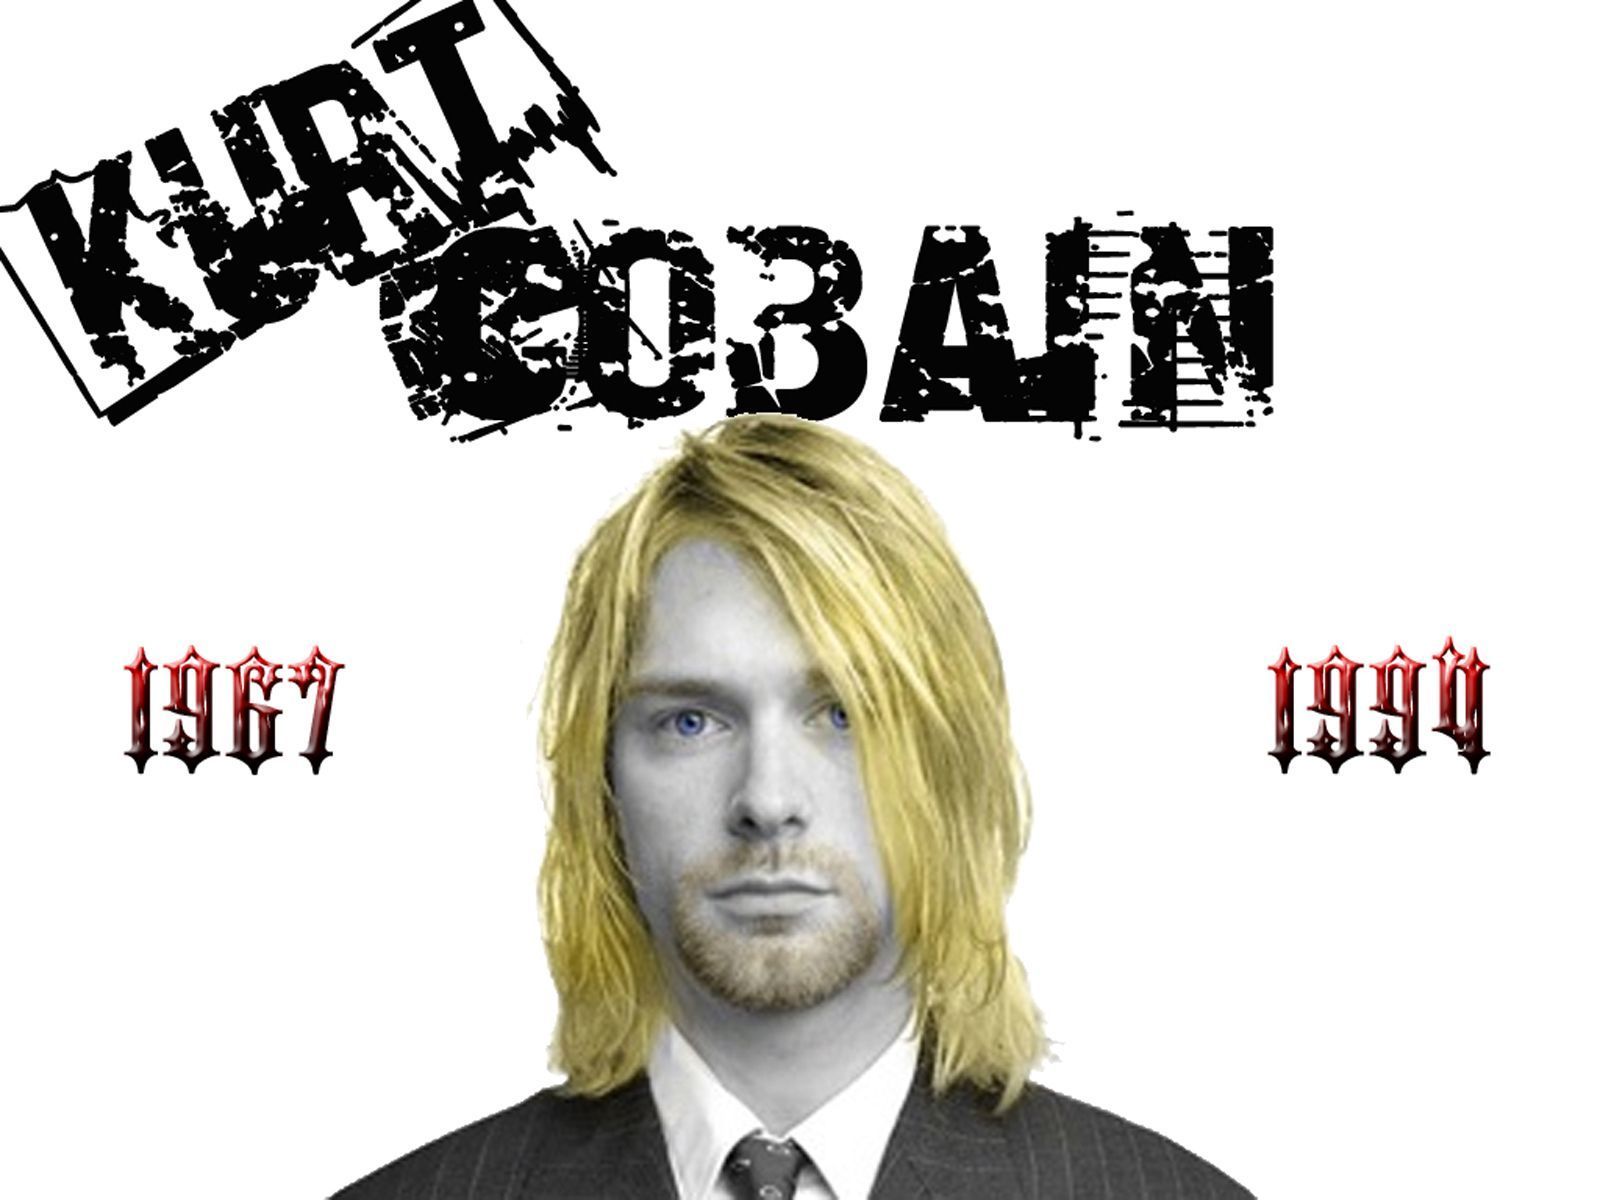 Kurt Cobain Desktop Wallpapers,Kurt Cobain Wallpapers & Pictures ...